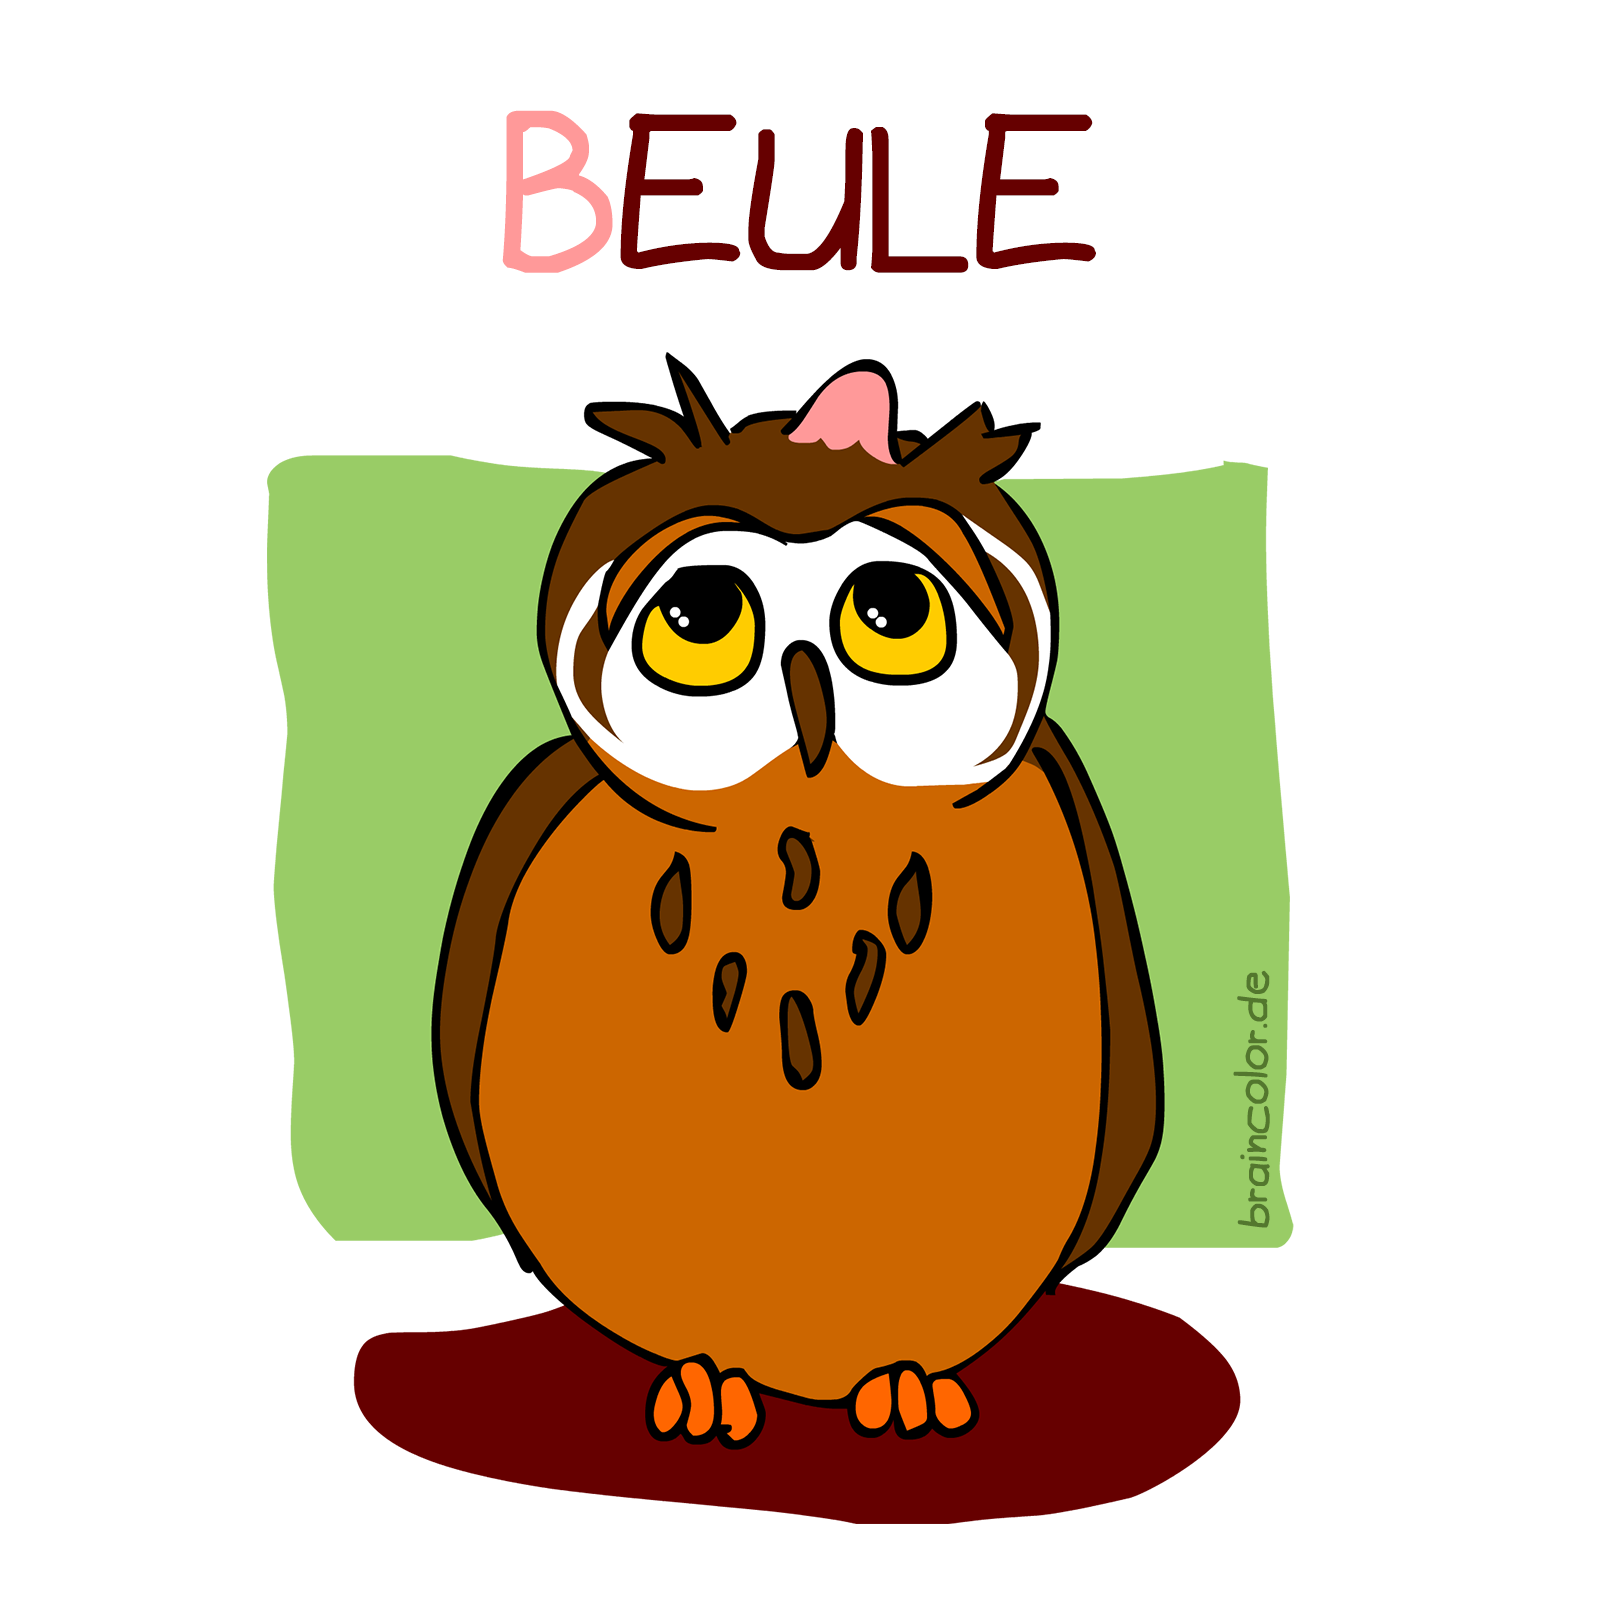 Eule-Beule